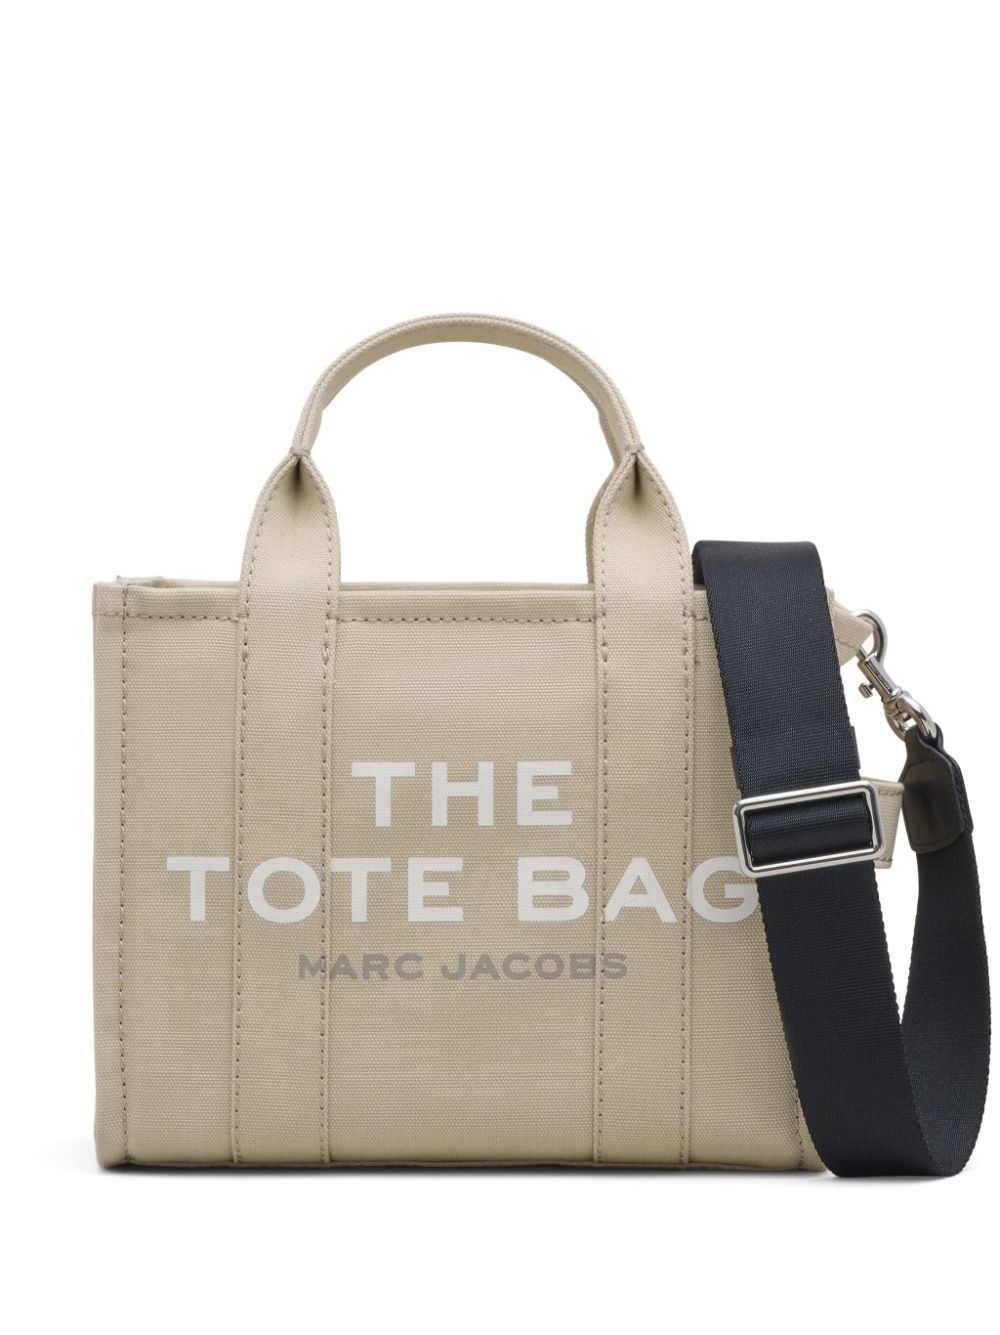 Bolso Marc Jacobs the tote bag pequeño beige - 210.00 € Bolsos y zapatos de  mujer, marcas de moda online, Marc Jacobs, Zadig&voltaire, coach, Veja,  Karl lagerfeld, y muchas marcas más